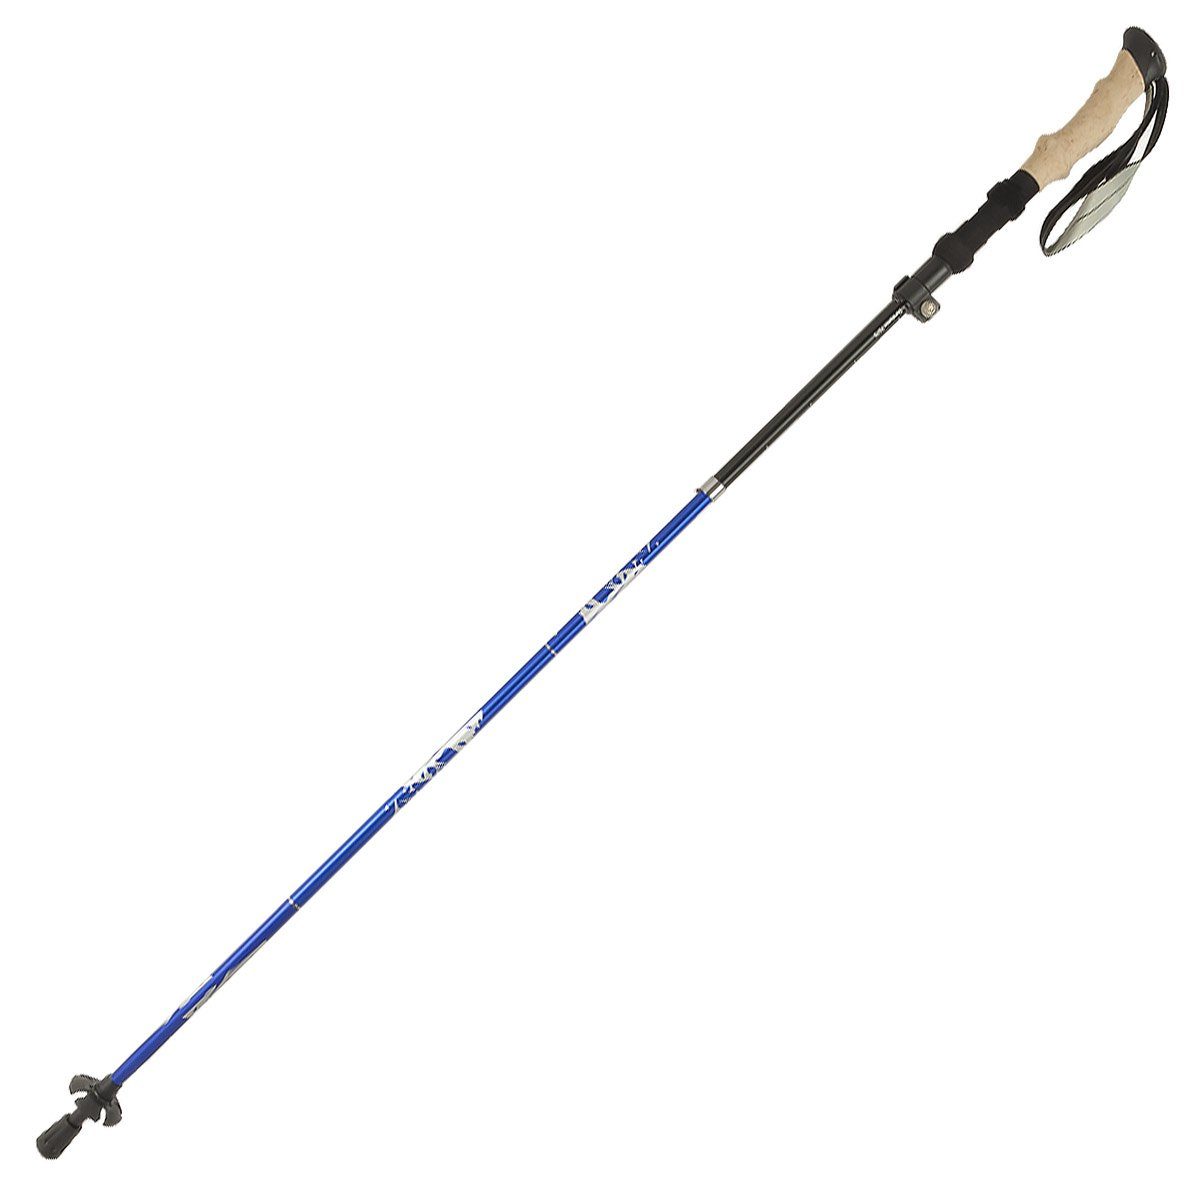 MidGard Nordic-Walking-Stöcke 101-130cm verstellbar, Antischock, Dämpfung, Wanderstöcke mit Tasche (1 St) Blau